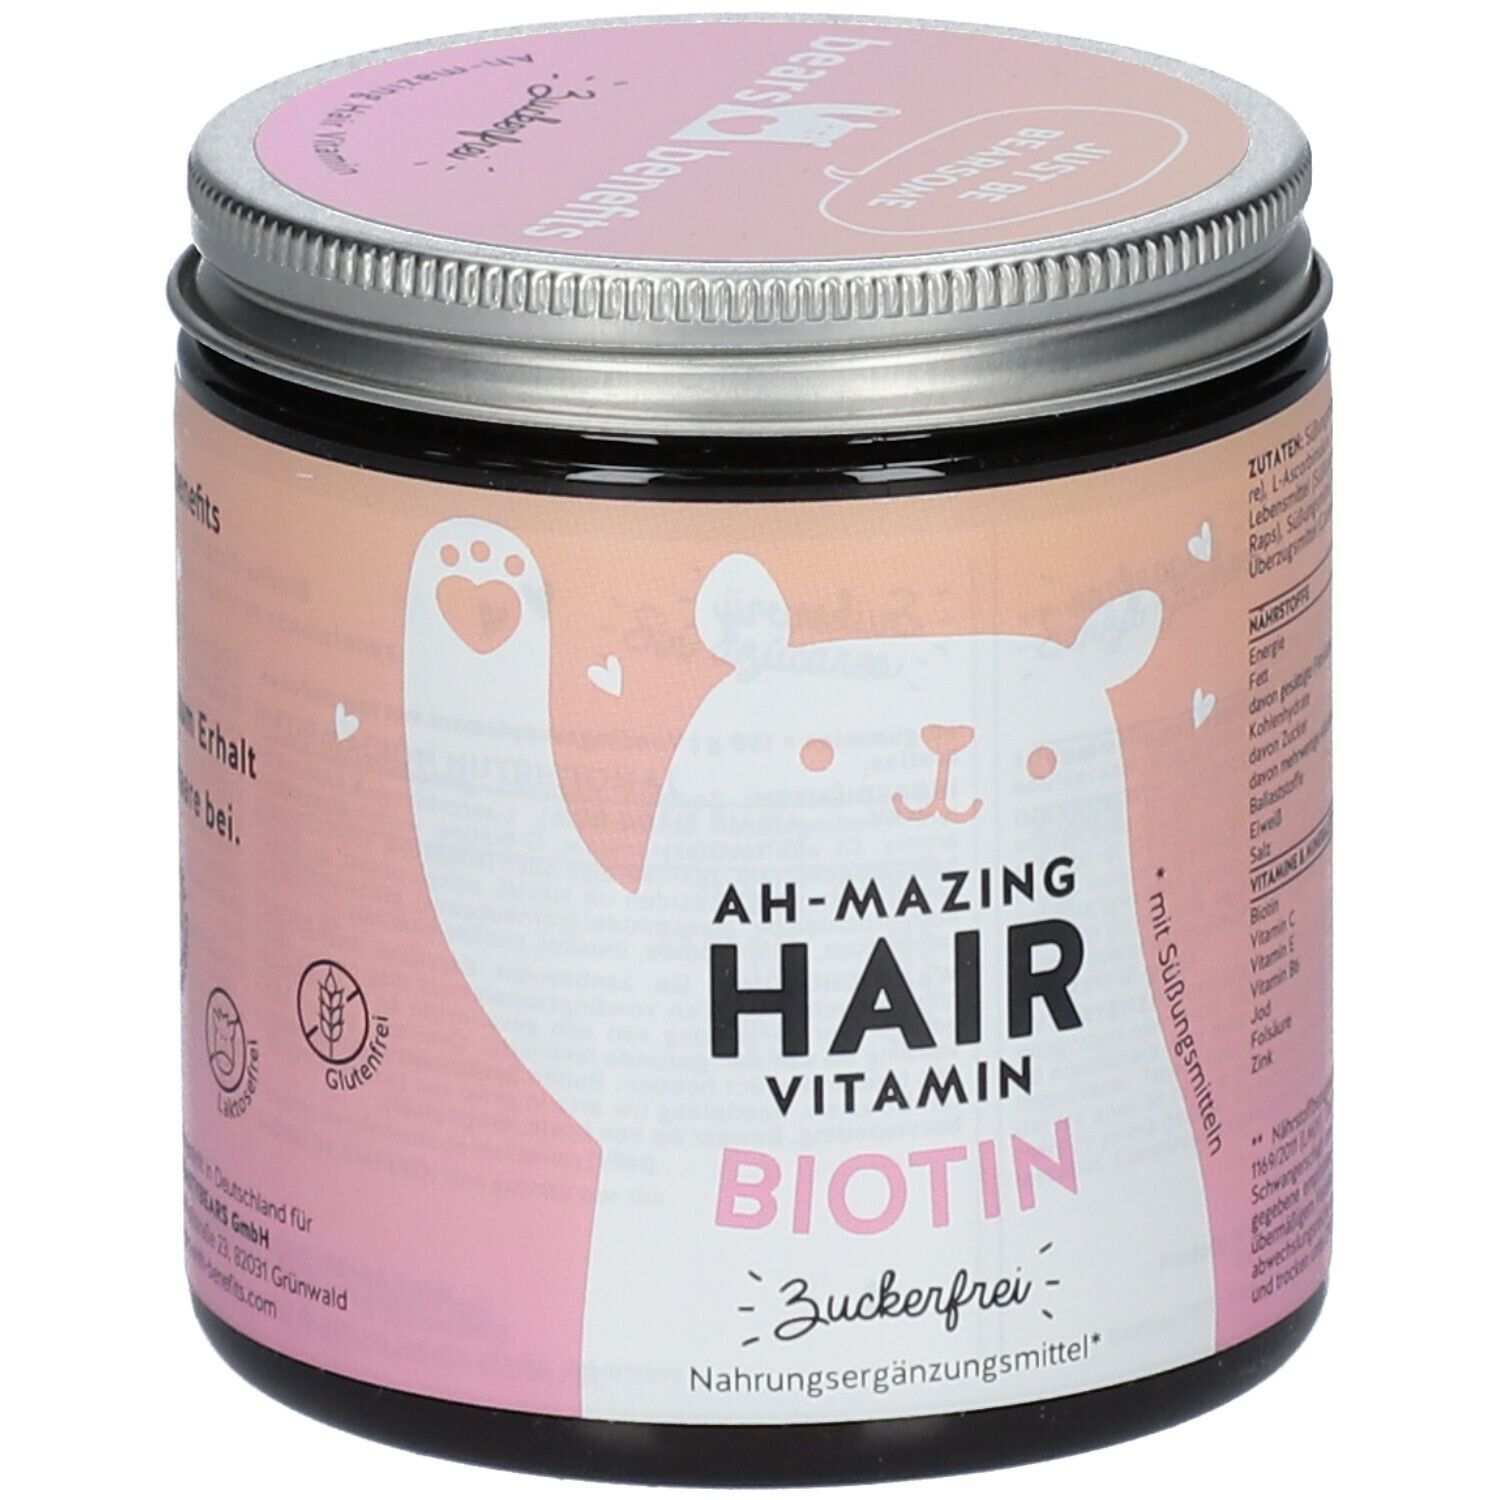 AH-MAZING Hair Vitamins Biotin zuckerfrei